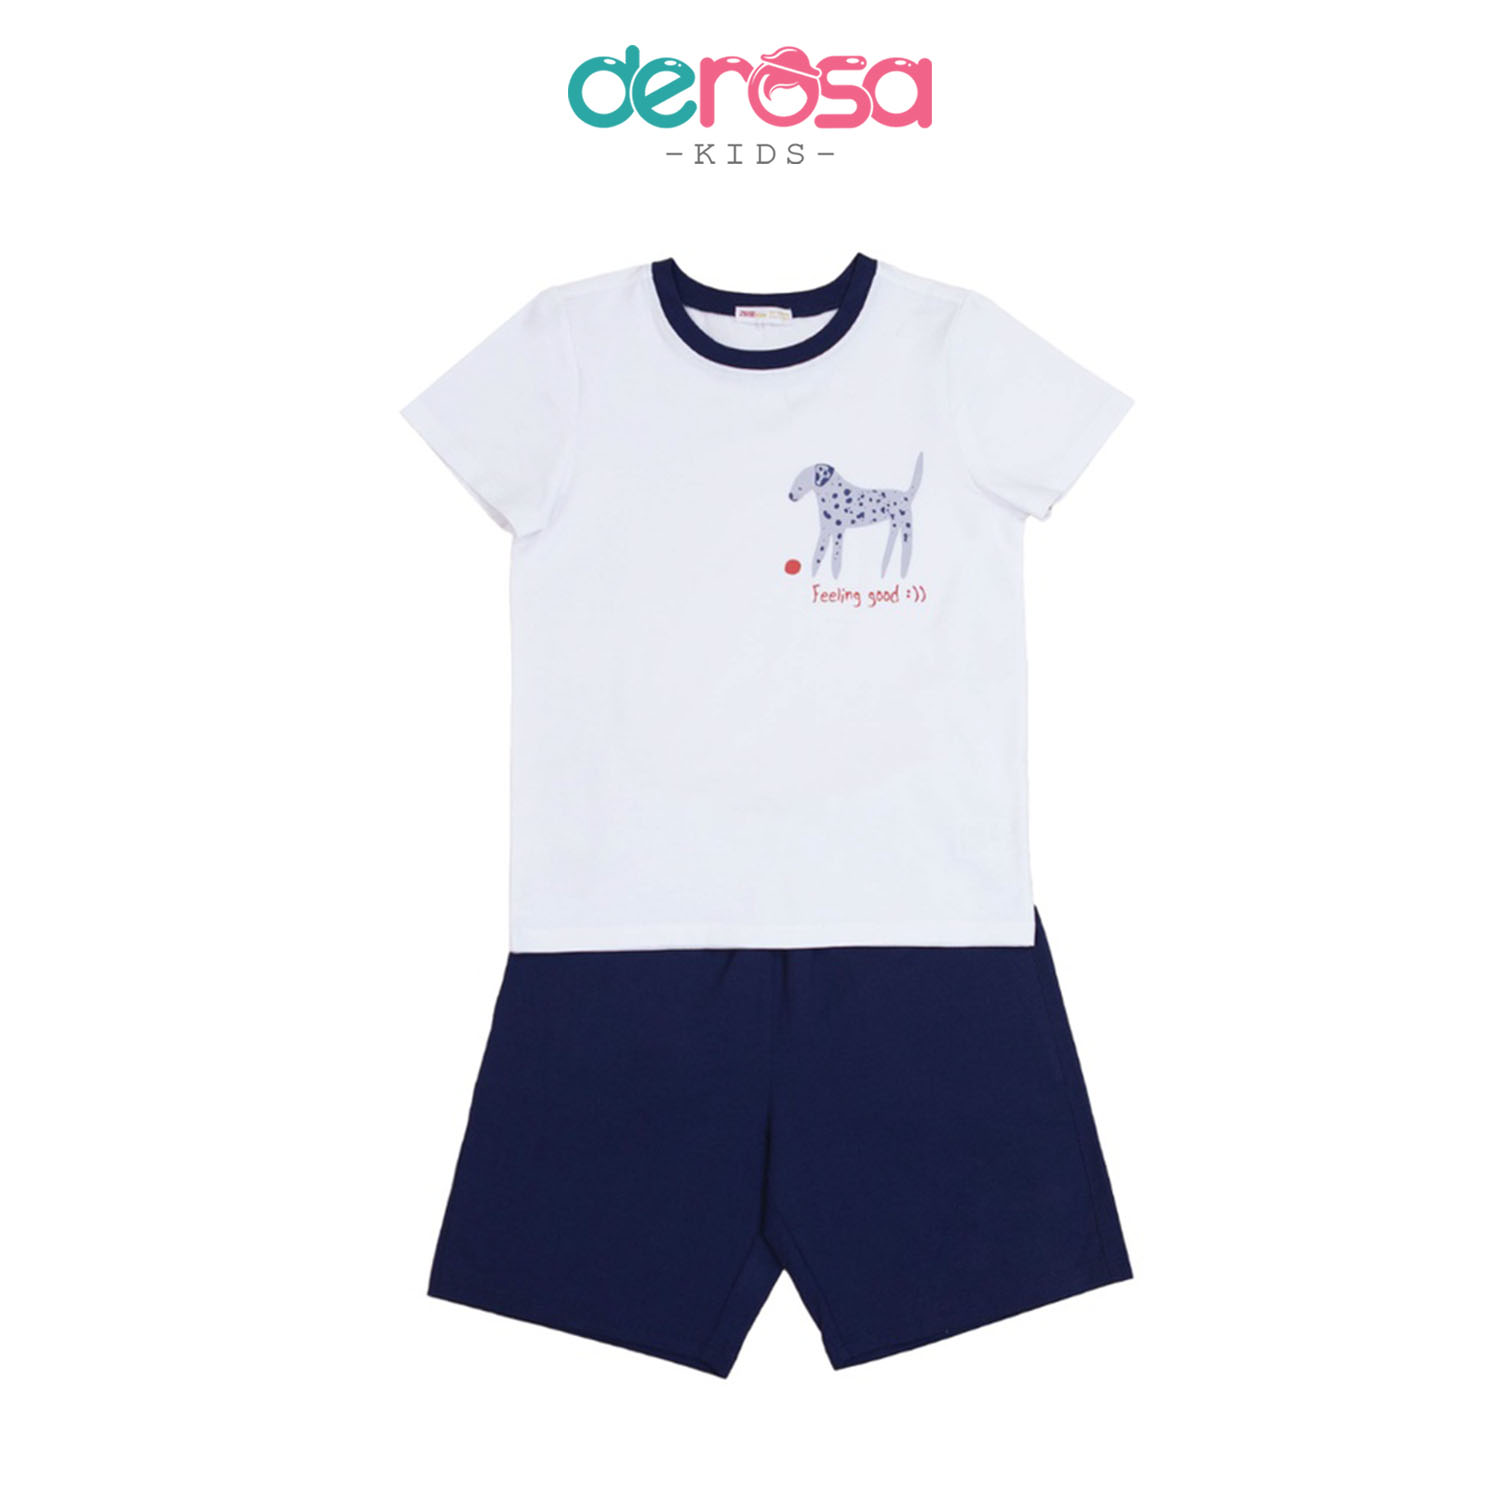 Bộ quần áo cho bé Derosakids - đồ bộ bé trai chất liệu cotton - 3 - 8 tuổi - ASKD019B